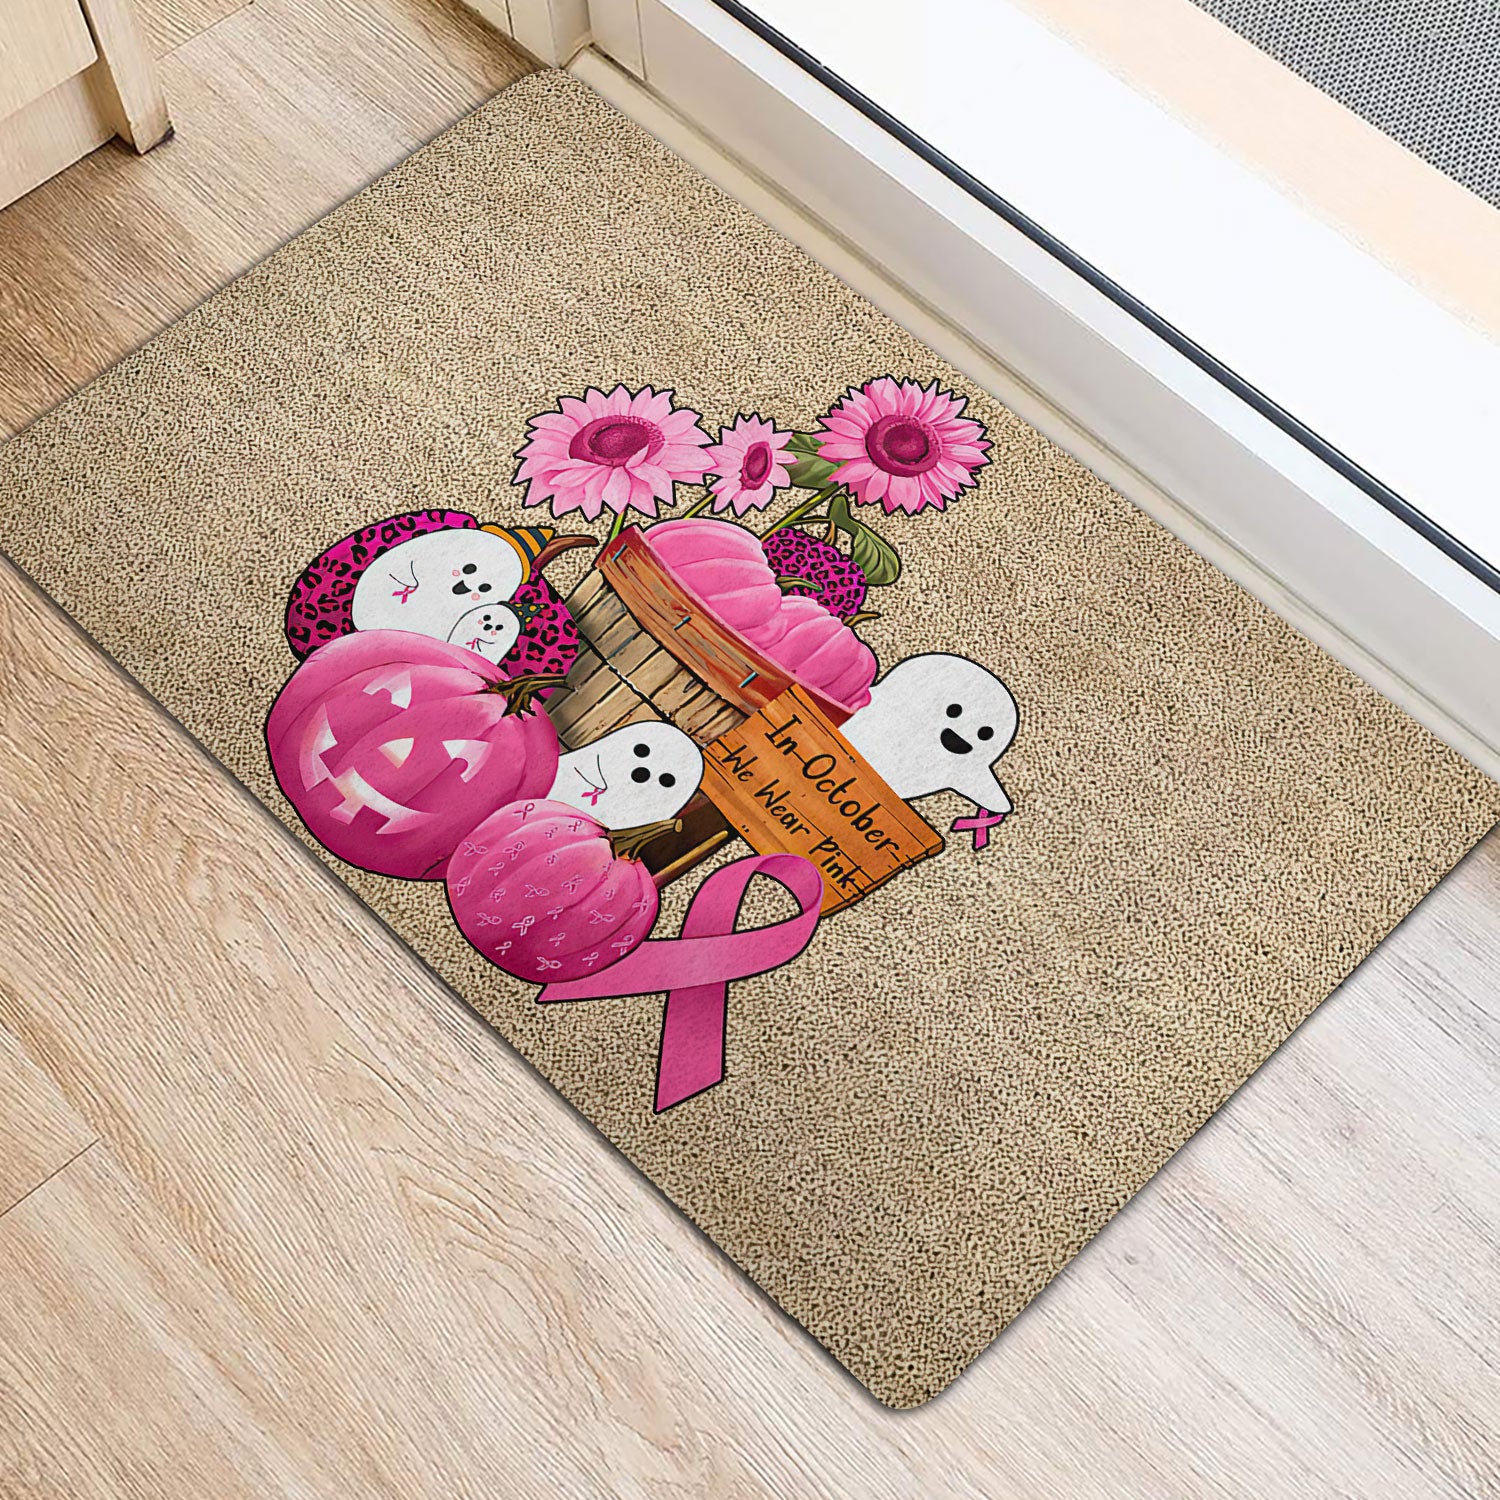 Ohaprints-Doormat-Outdoor-Indoor-Breast-Cancer-Awareness-Pumpkin-Boo-Hope-Support-Pink-Ribbon-Rubber-Door-Mat-1910-